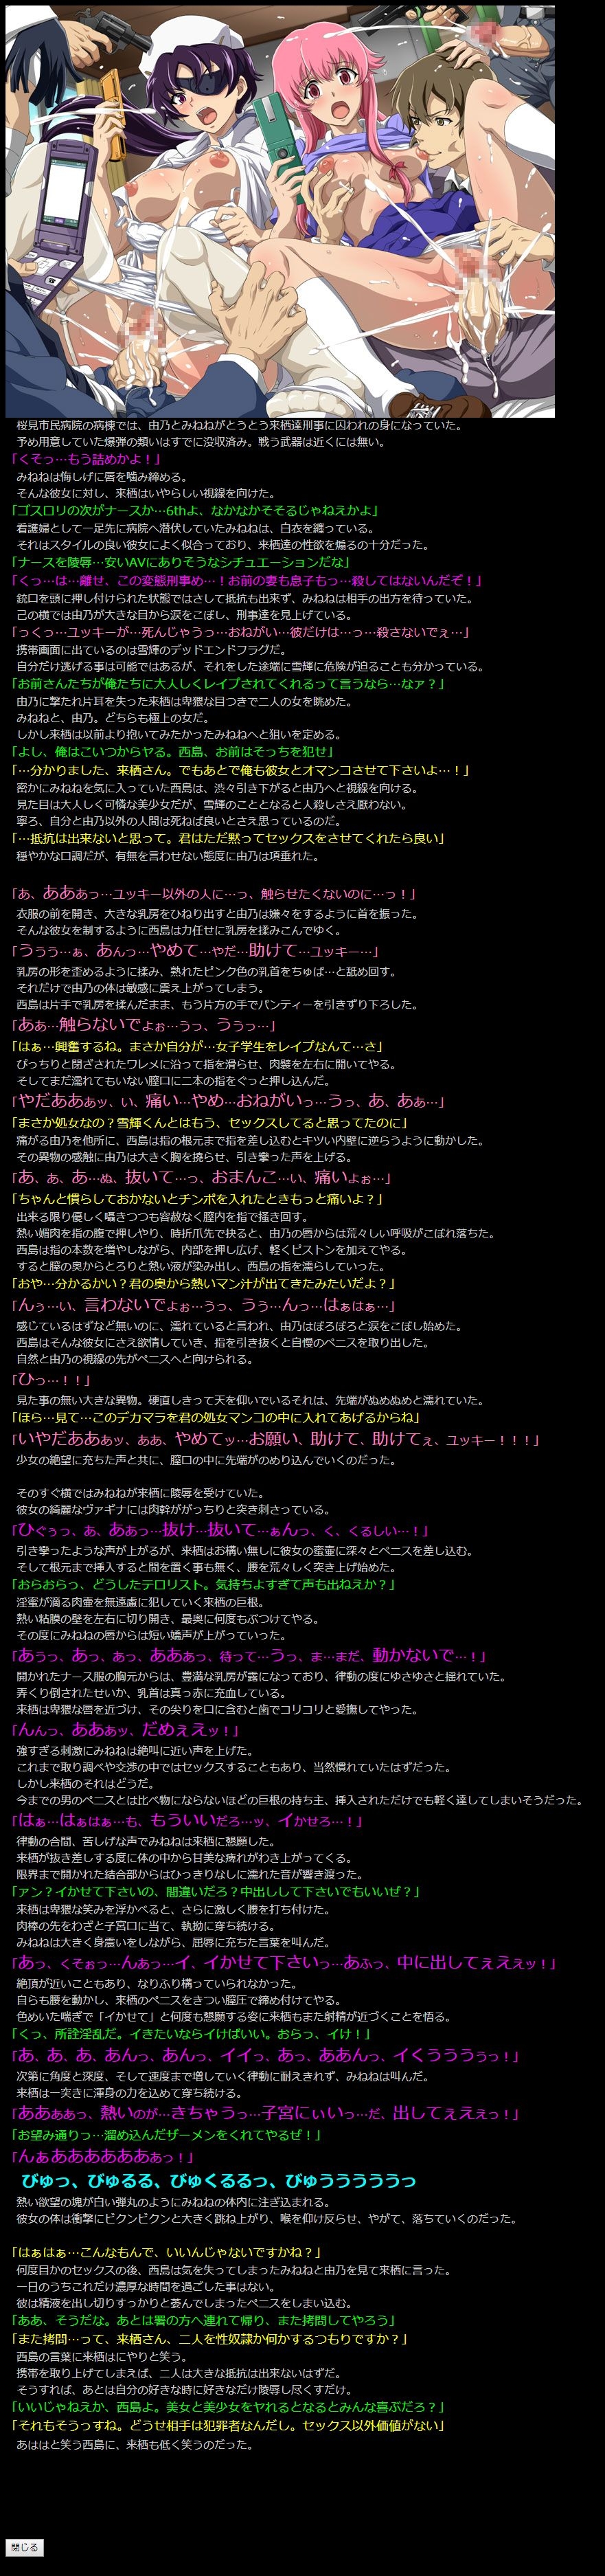 (COMIC1☆6) [LolitaChannel (Arigase Shinji)] Yuumei Chara Kannou Shousetsu CG Shuu No. 218!! Mirai Nikki HaaHaa CG Shuu (Mirai Nikki) 18